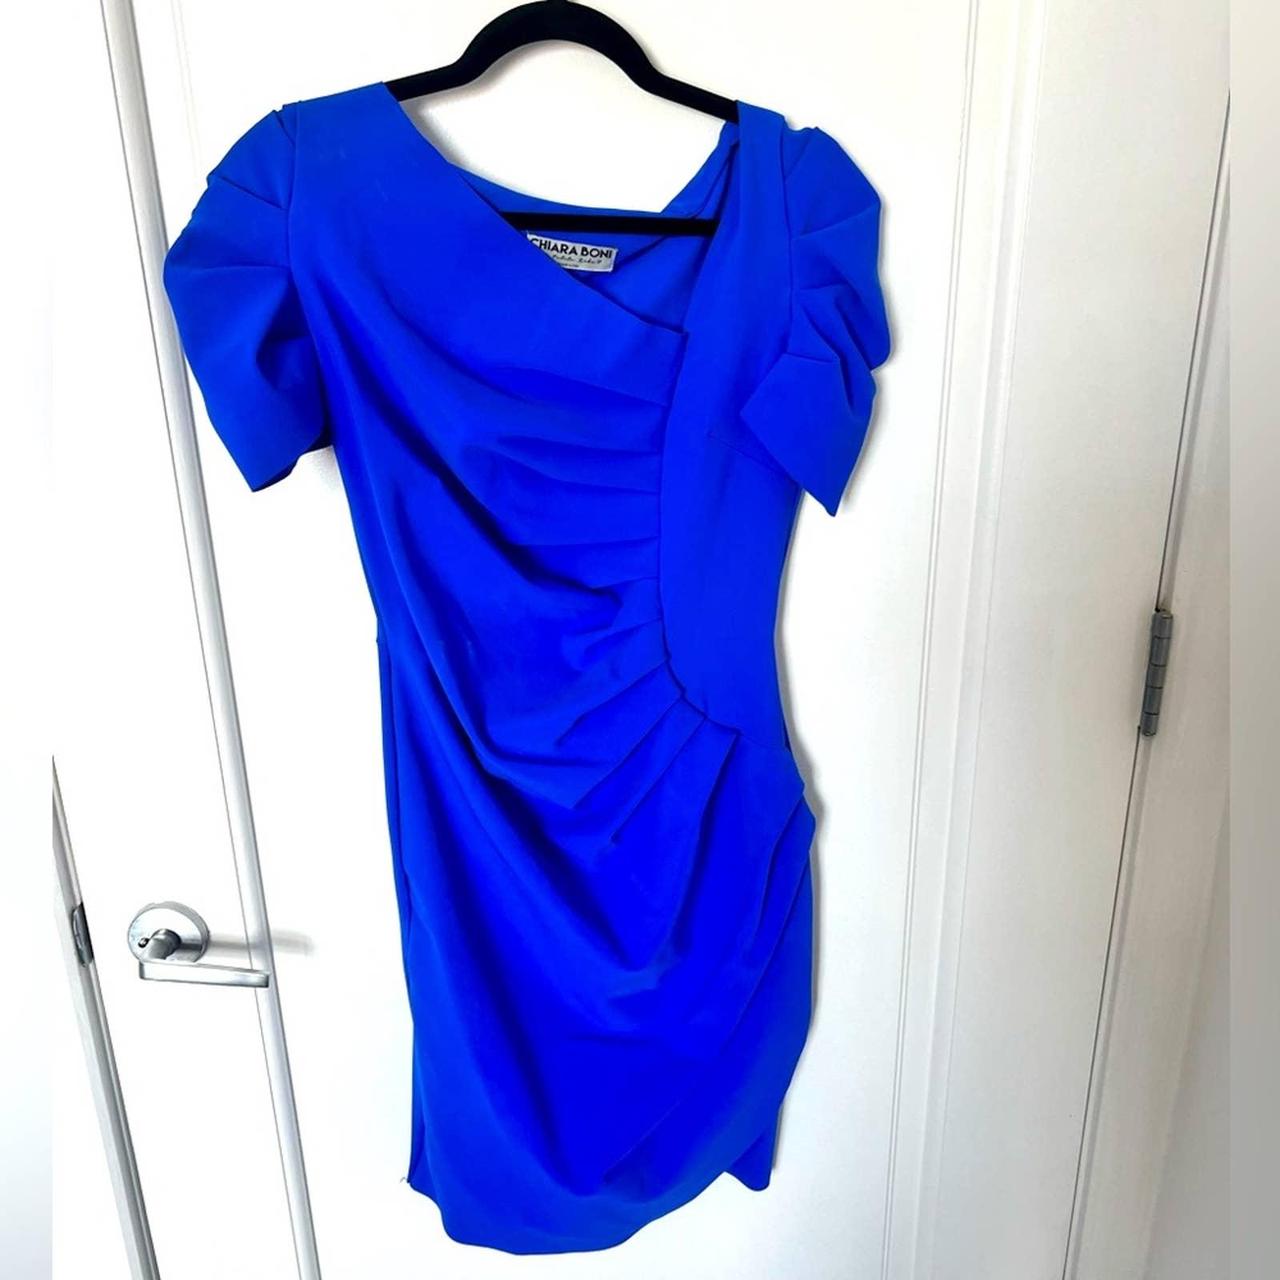 Chiara Boni La Petite Robe Women's Blue Dress (4)